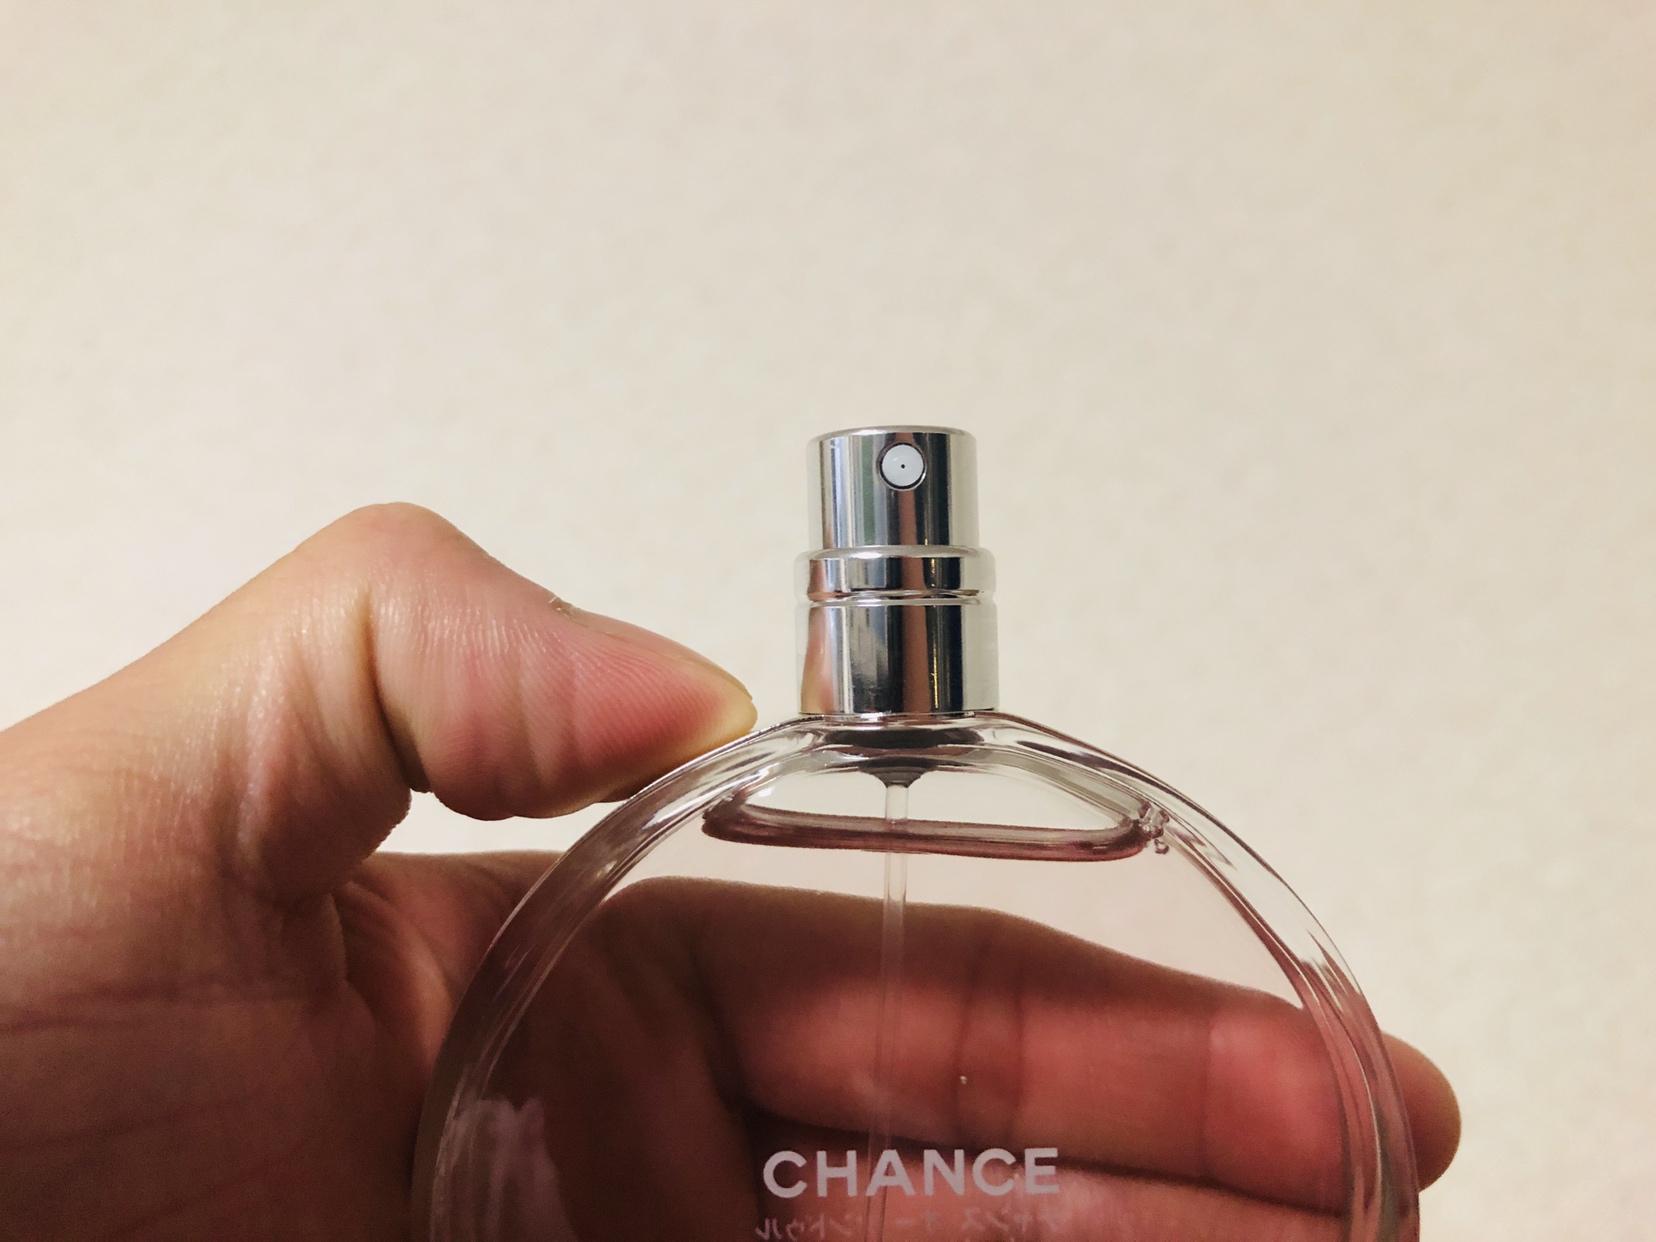 あいみょんも愛用するシャネルの「チャンス オー タンドゥル」徹底レビュー【ピンクボトルの大人の香水】 | 暮らしにあいみょん